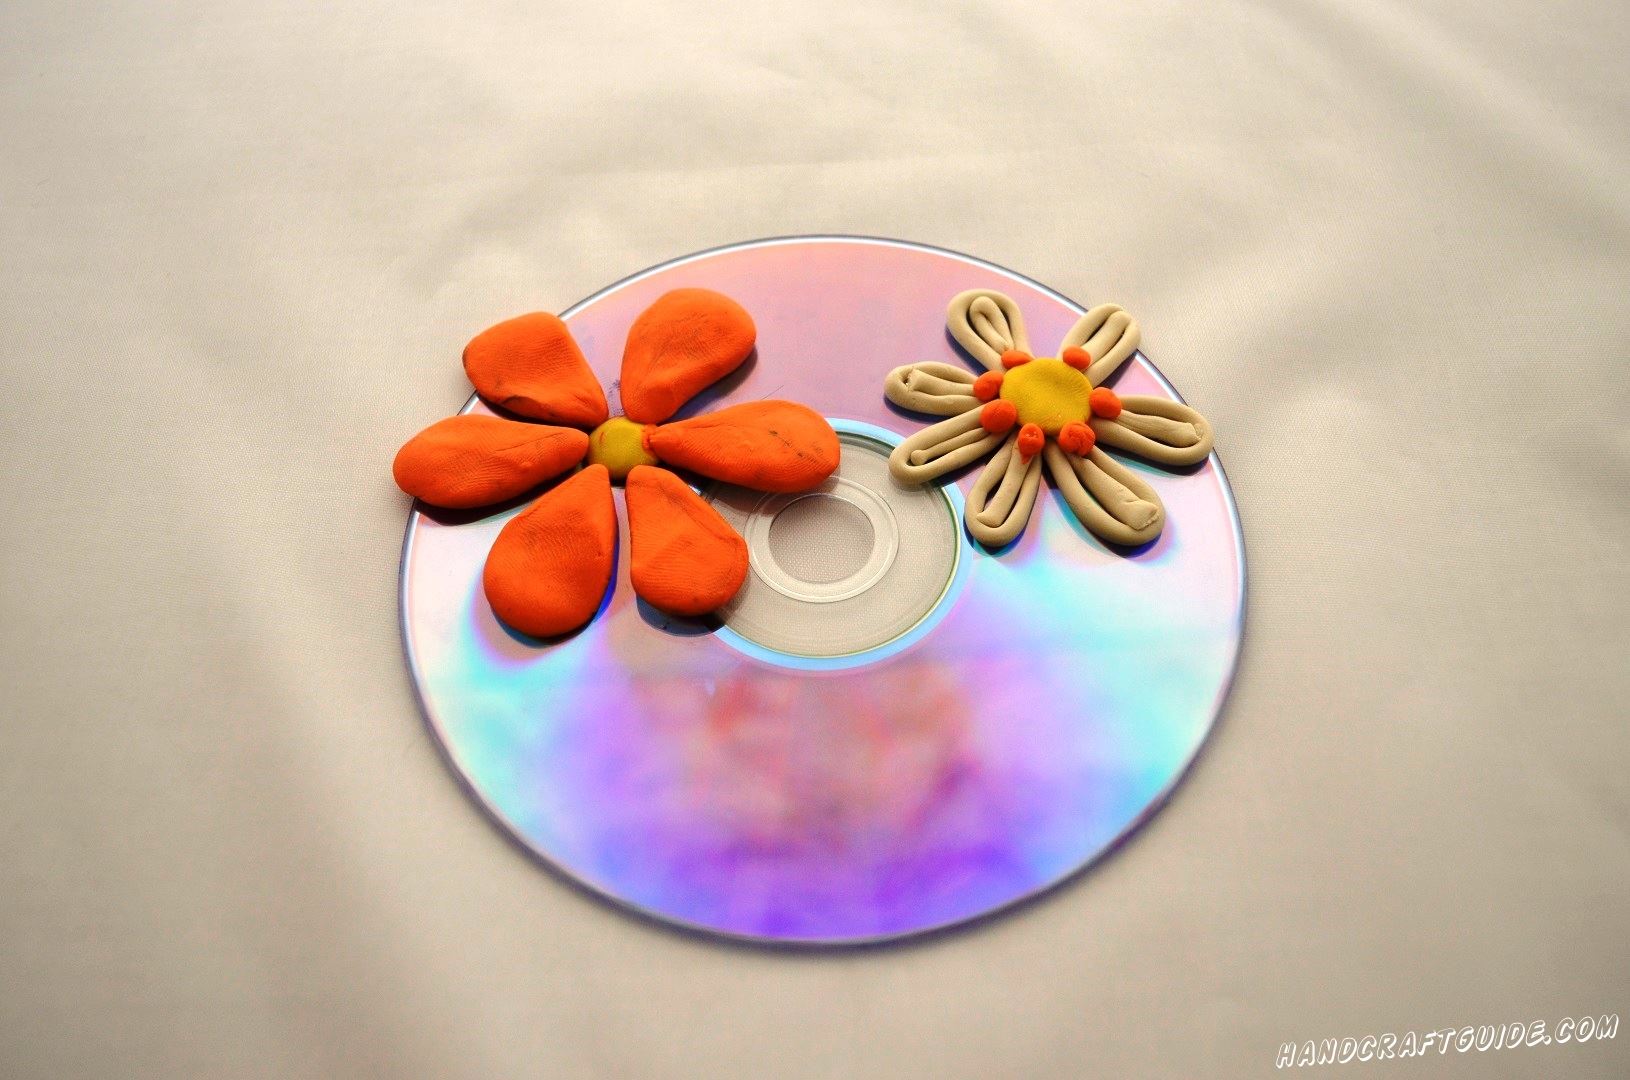 цветы из пластилина на диске